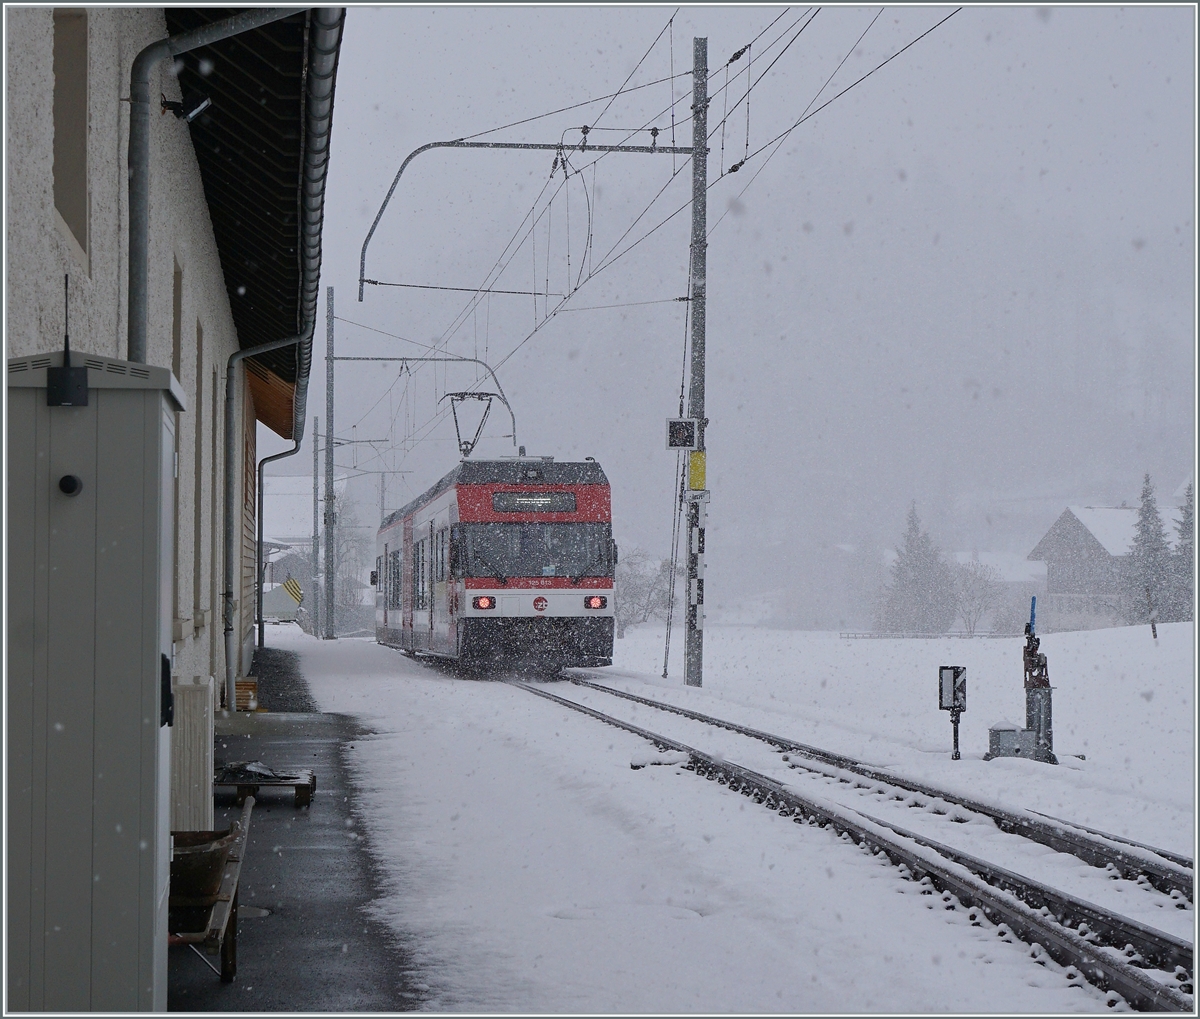 Der ex CEV Be 2/6 7004  Montreux, nun als Be 125 013 bei der Zentralbahn bei der Ausfahrt in  Innertkirchen auf dem Weg nach Meiringen. 

16. März 2021